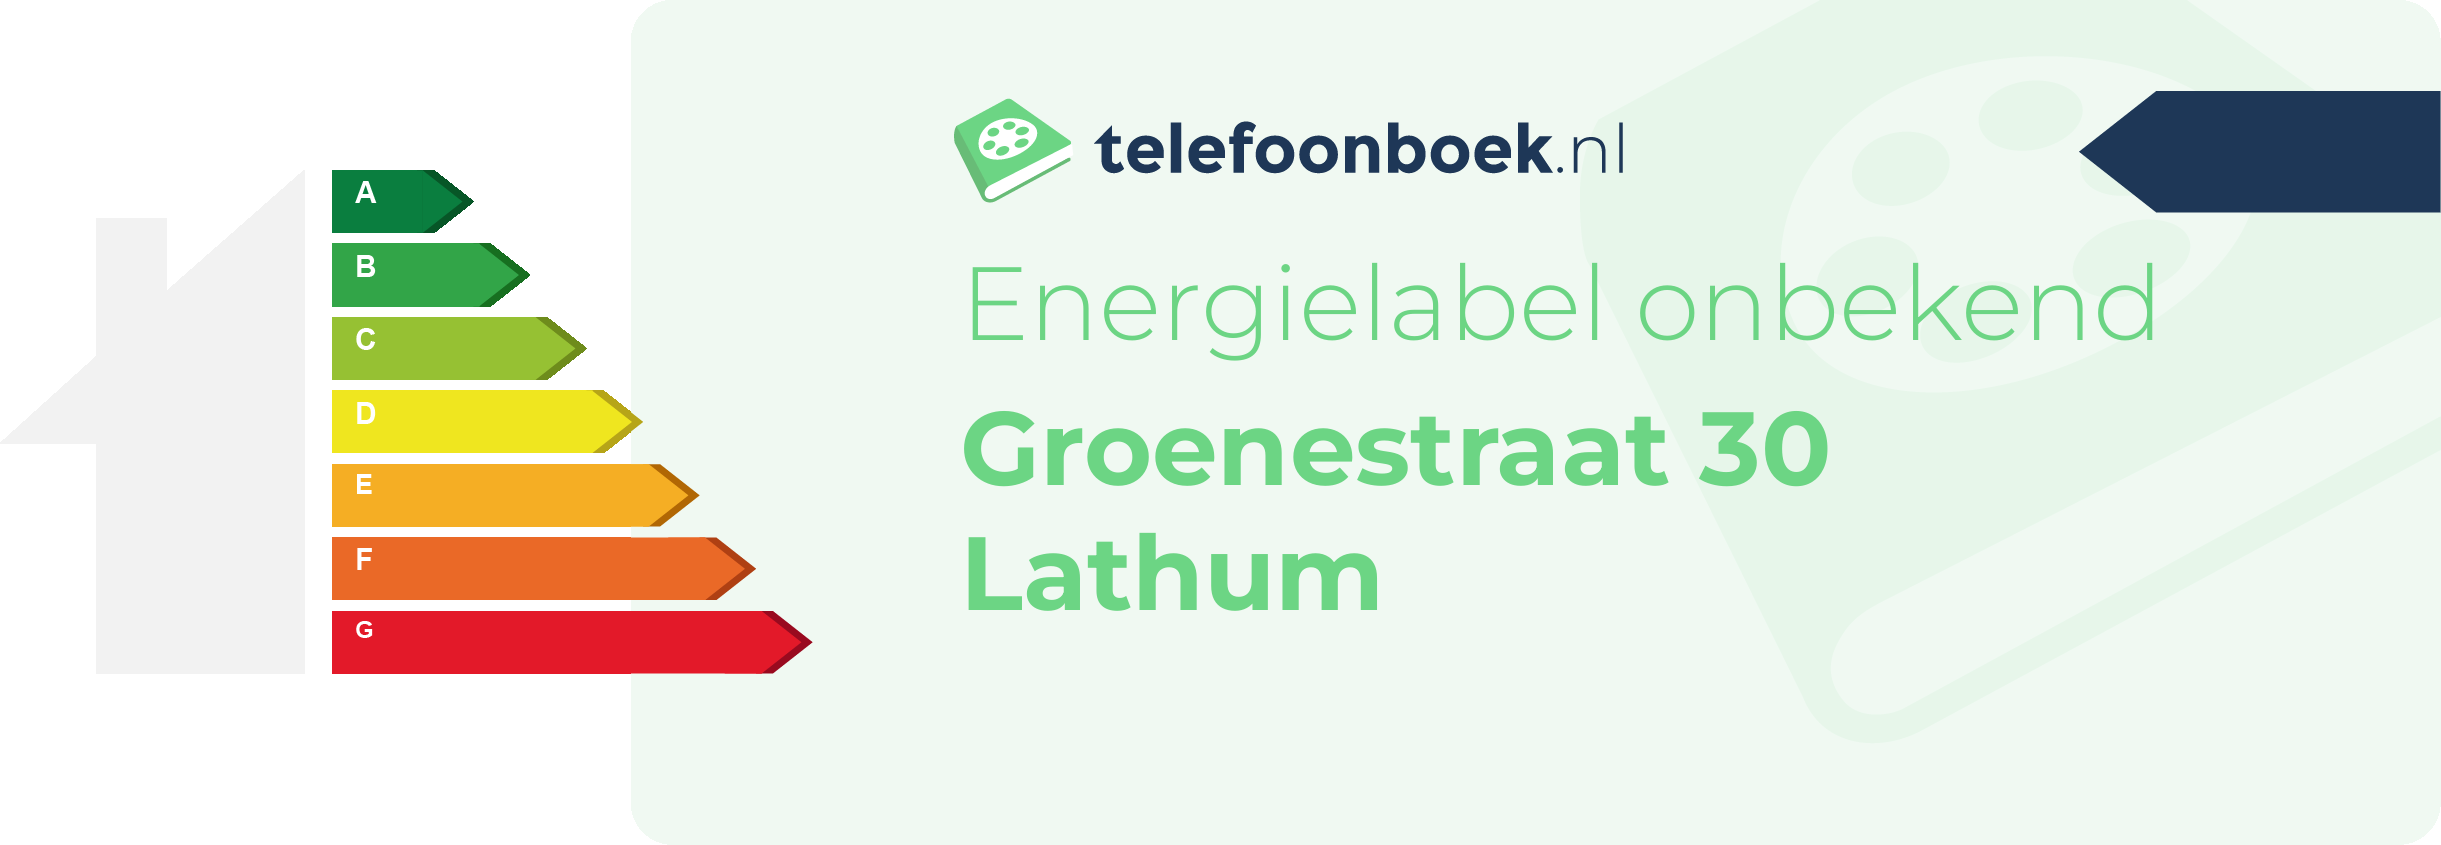 Energielabel Groenestraat 30 Lathum